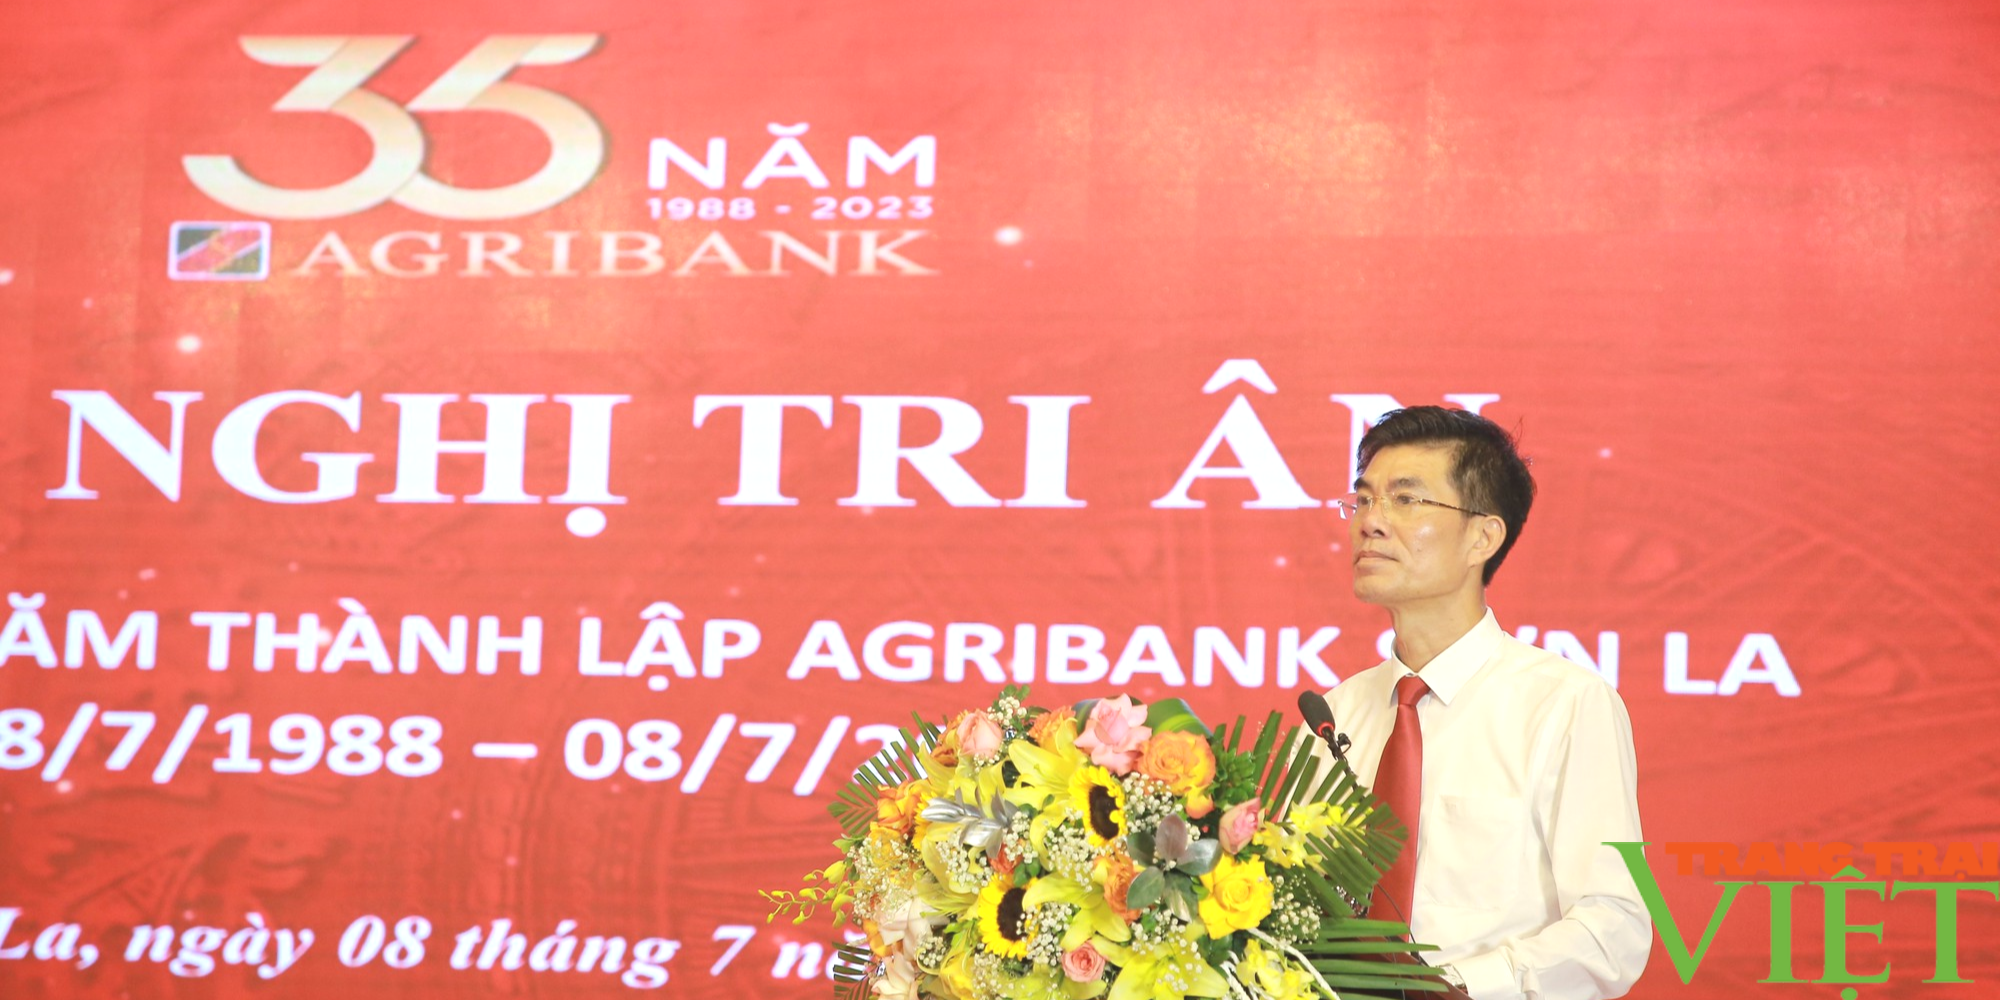 Agribank Chi nhánh tỉnh Sơn La kỷ niệm 35 năm Ngày thành lập  - Ảnh 2.